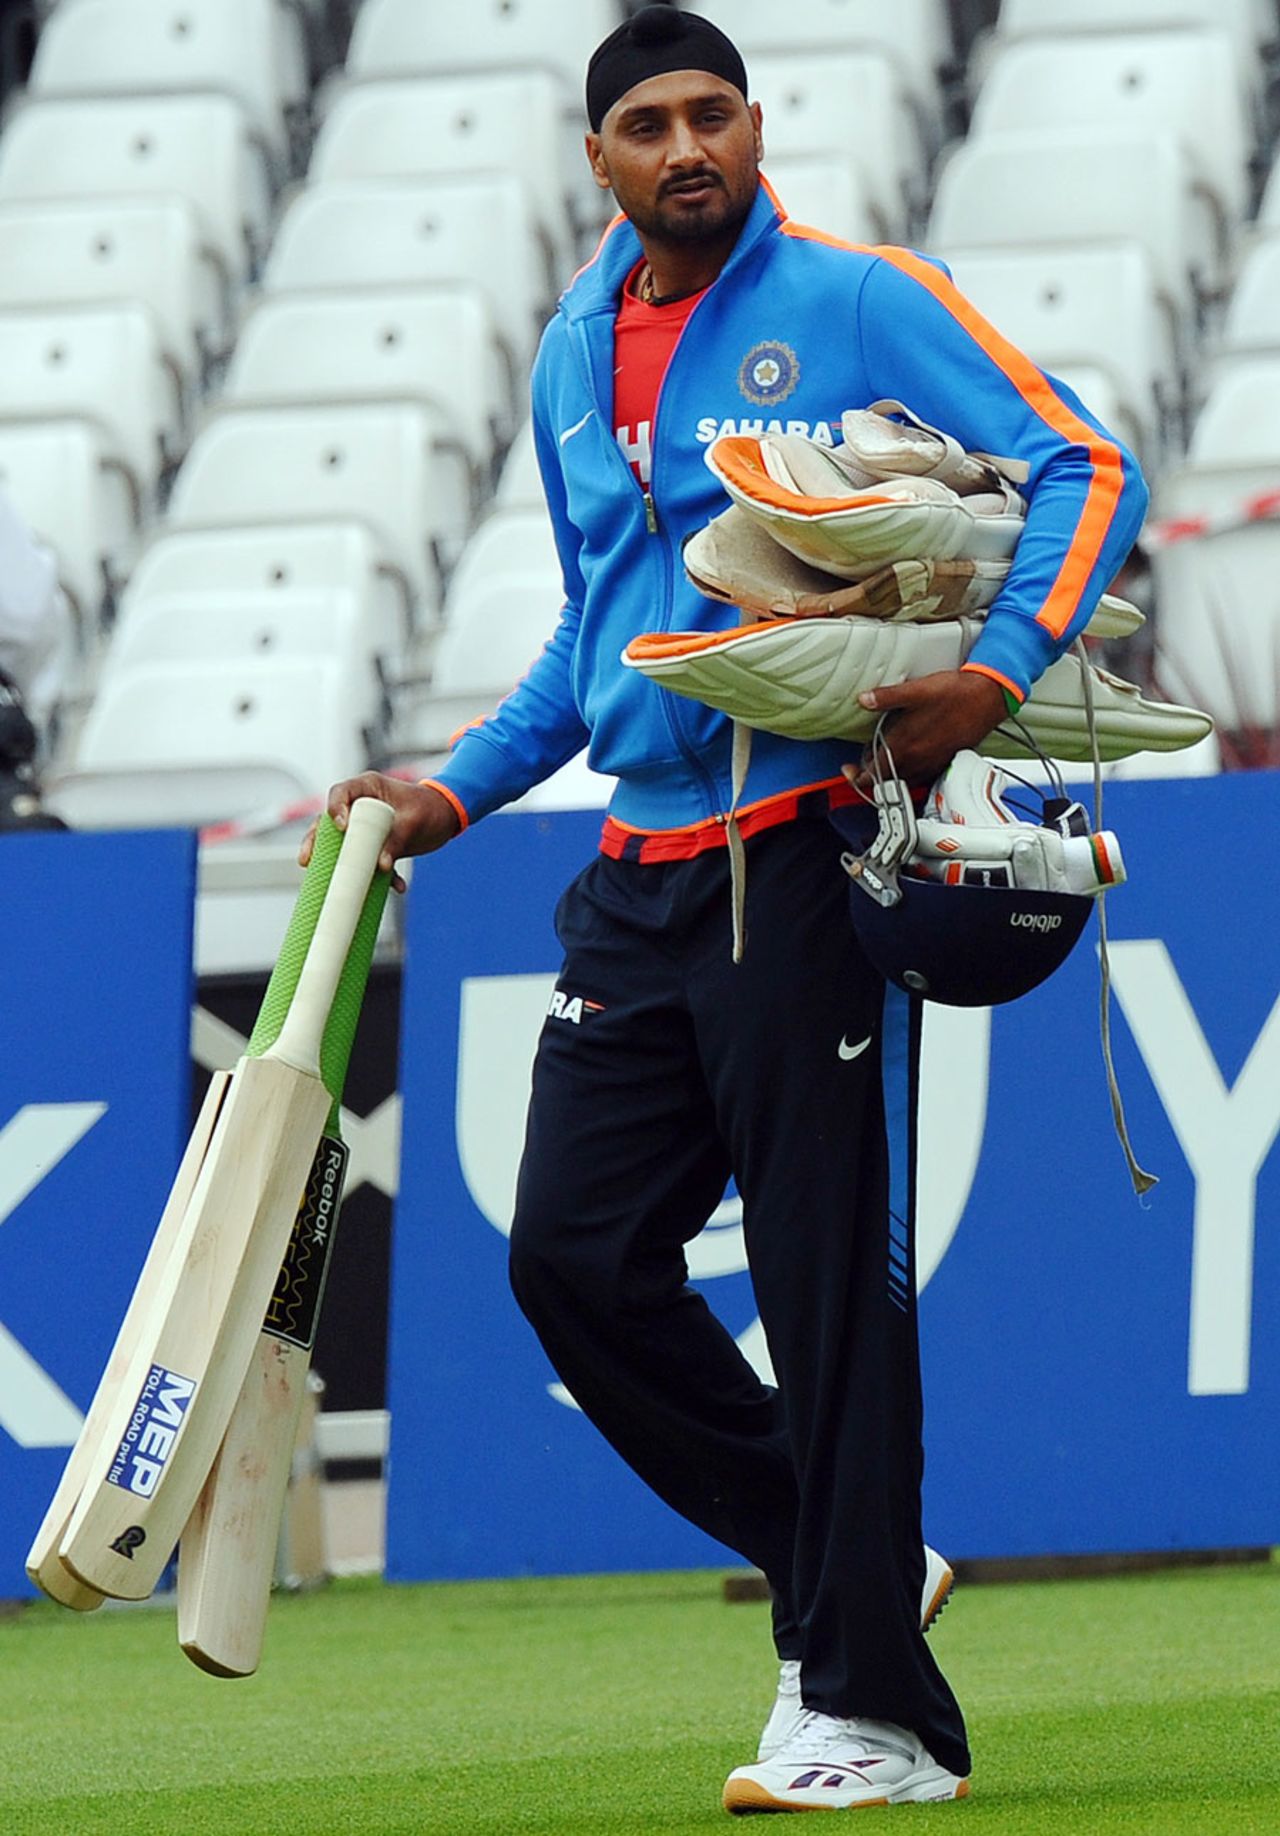 Harbhajan Singh arrives for a batting net, Nottingham, July 27, 2011